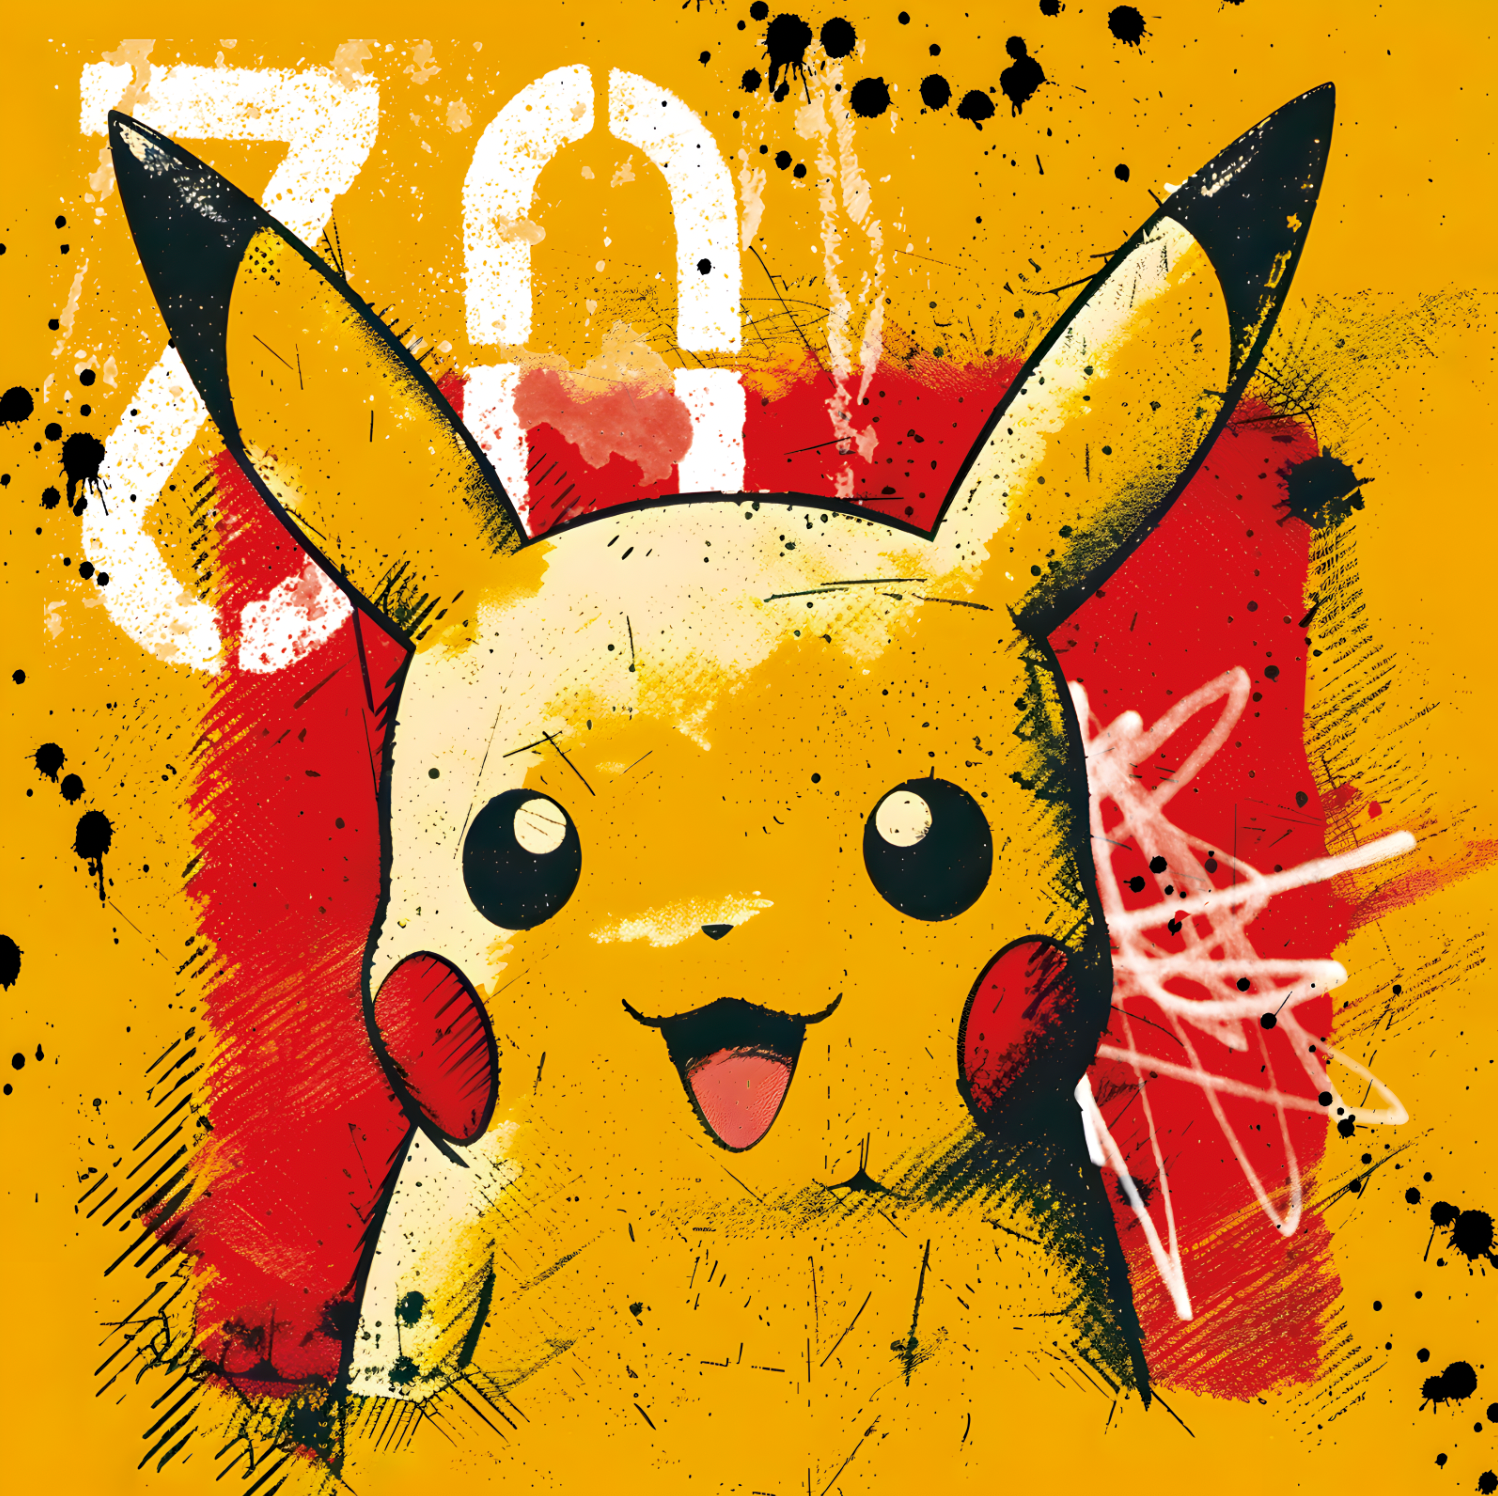 Tableau Pokémon Vibrant - Cadre Déco Mural pour Décoration Intérieure - Fabulartz.fr 